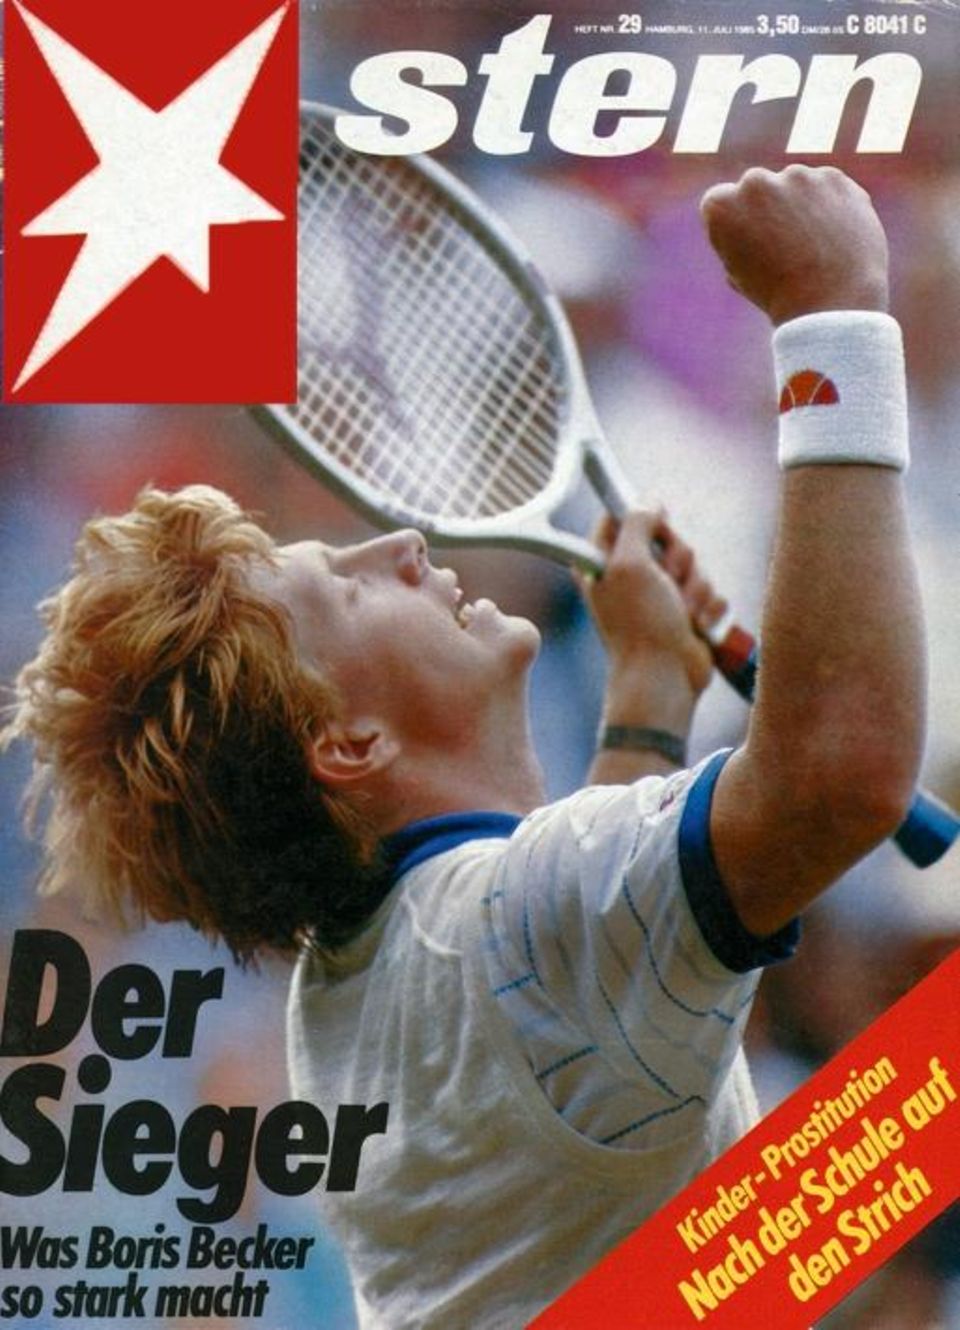 Boris Becker wins Wimbledon